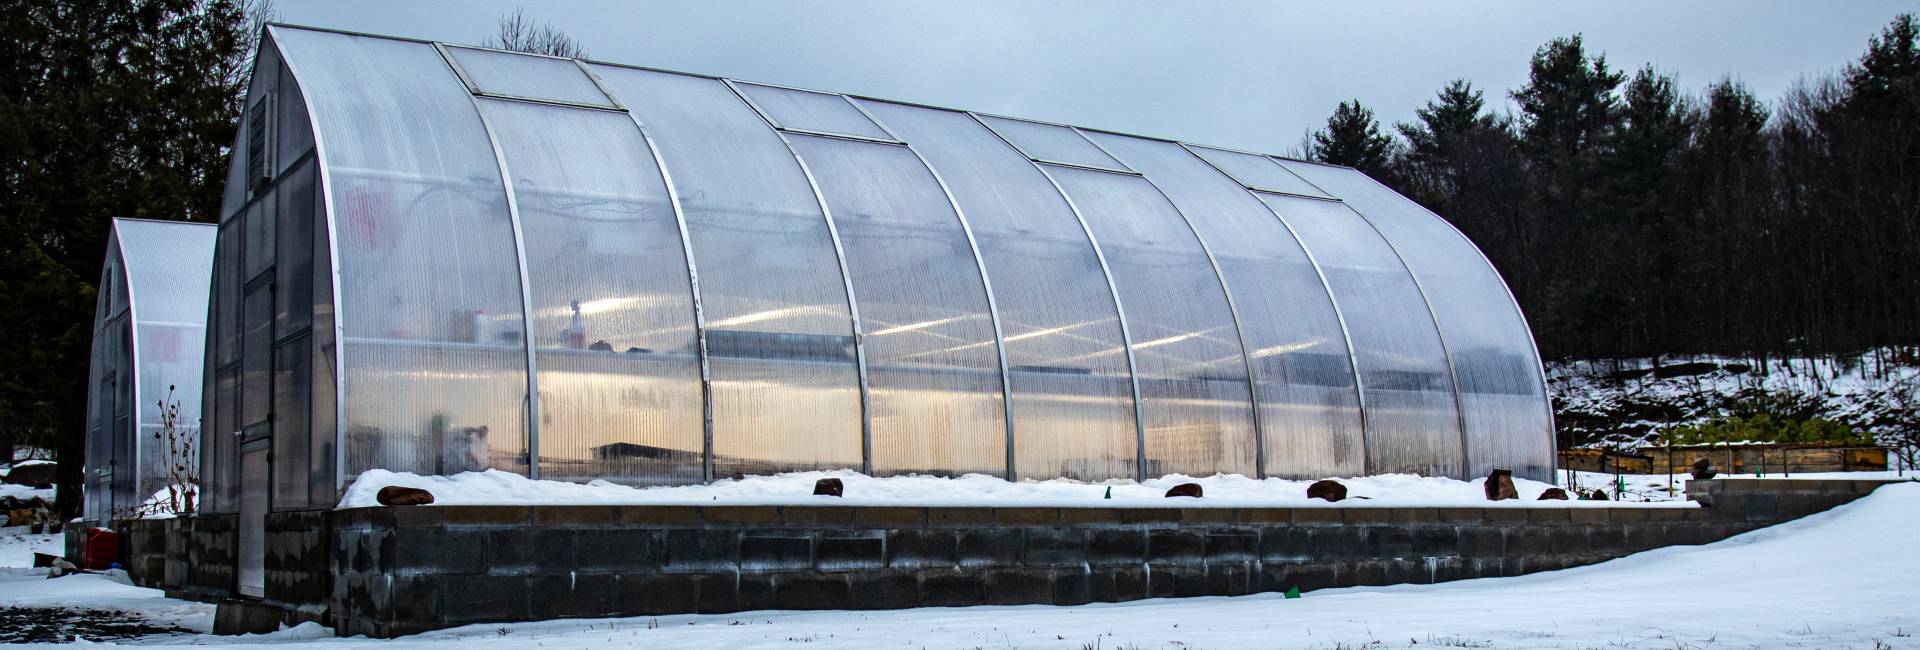 How to start winter greenhouse gardening